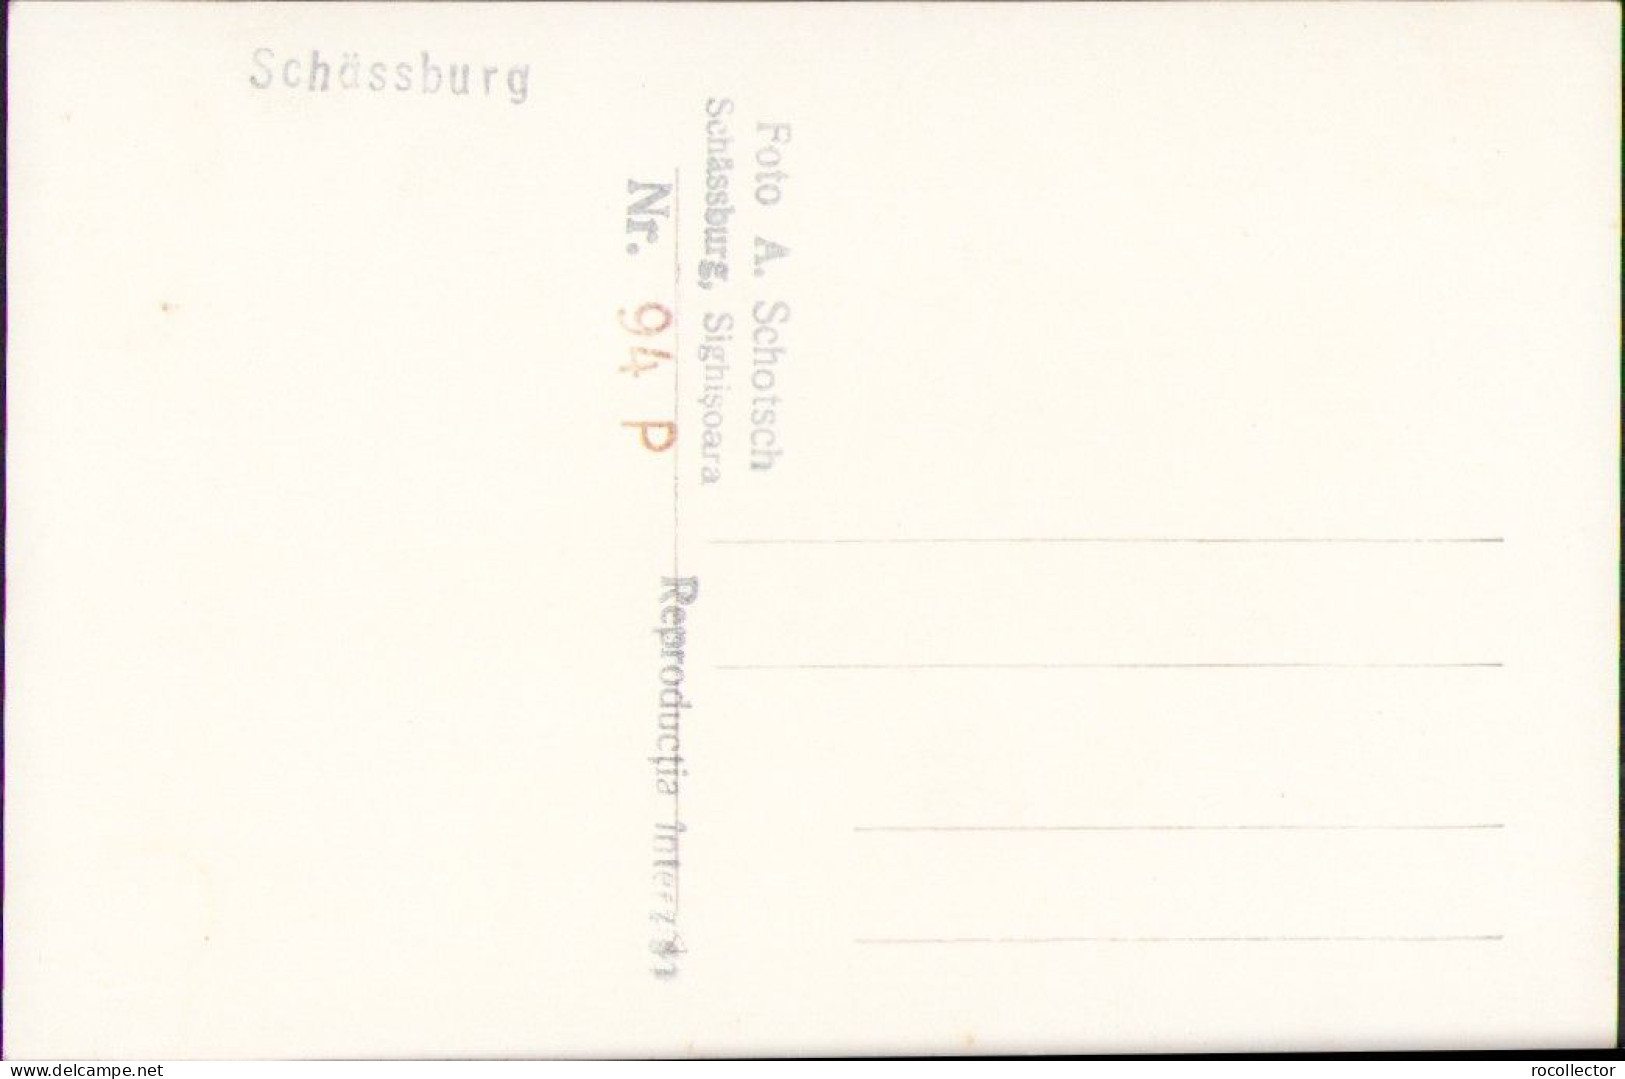 Schässburg Segesvar Sighișoara Studio Albert Schotsch Postcard CP359 - Rumänien